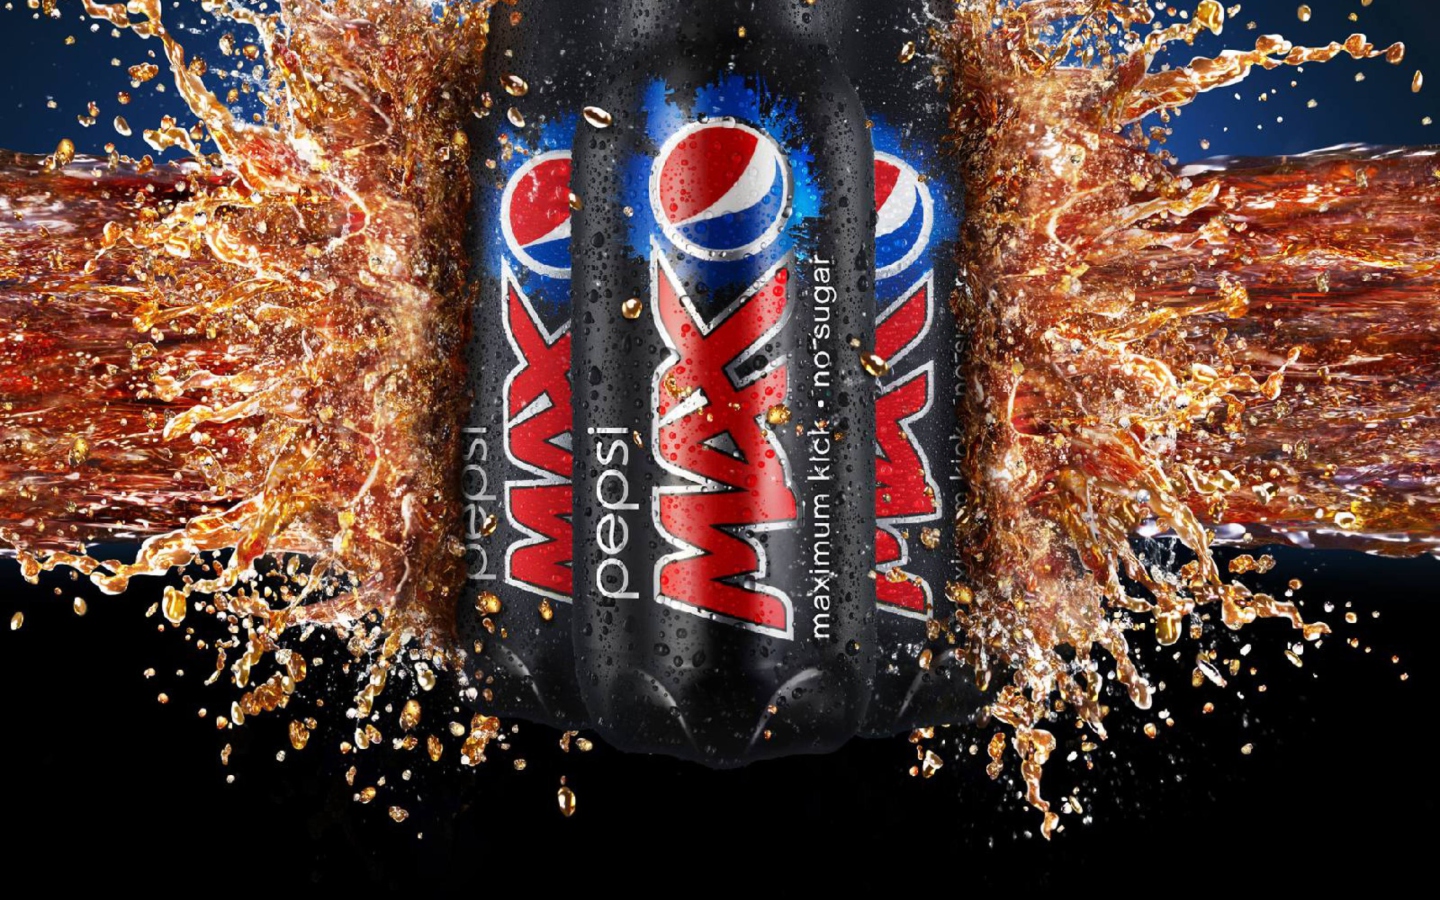 Das Pepsi Max Wallpaper 1440x900